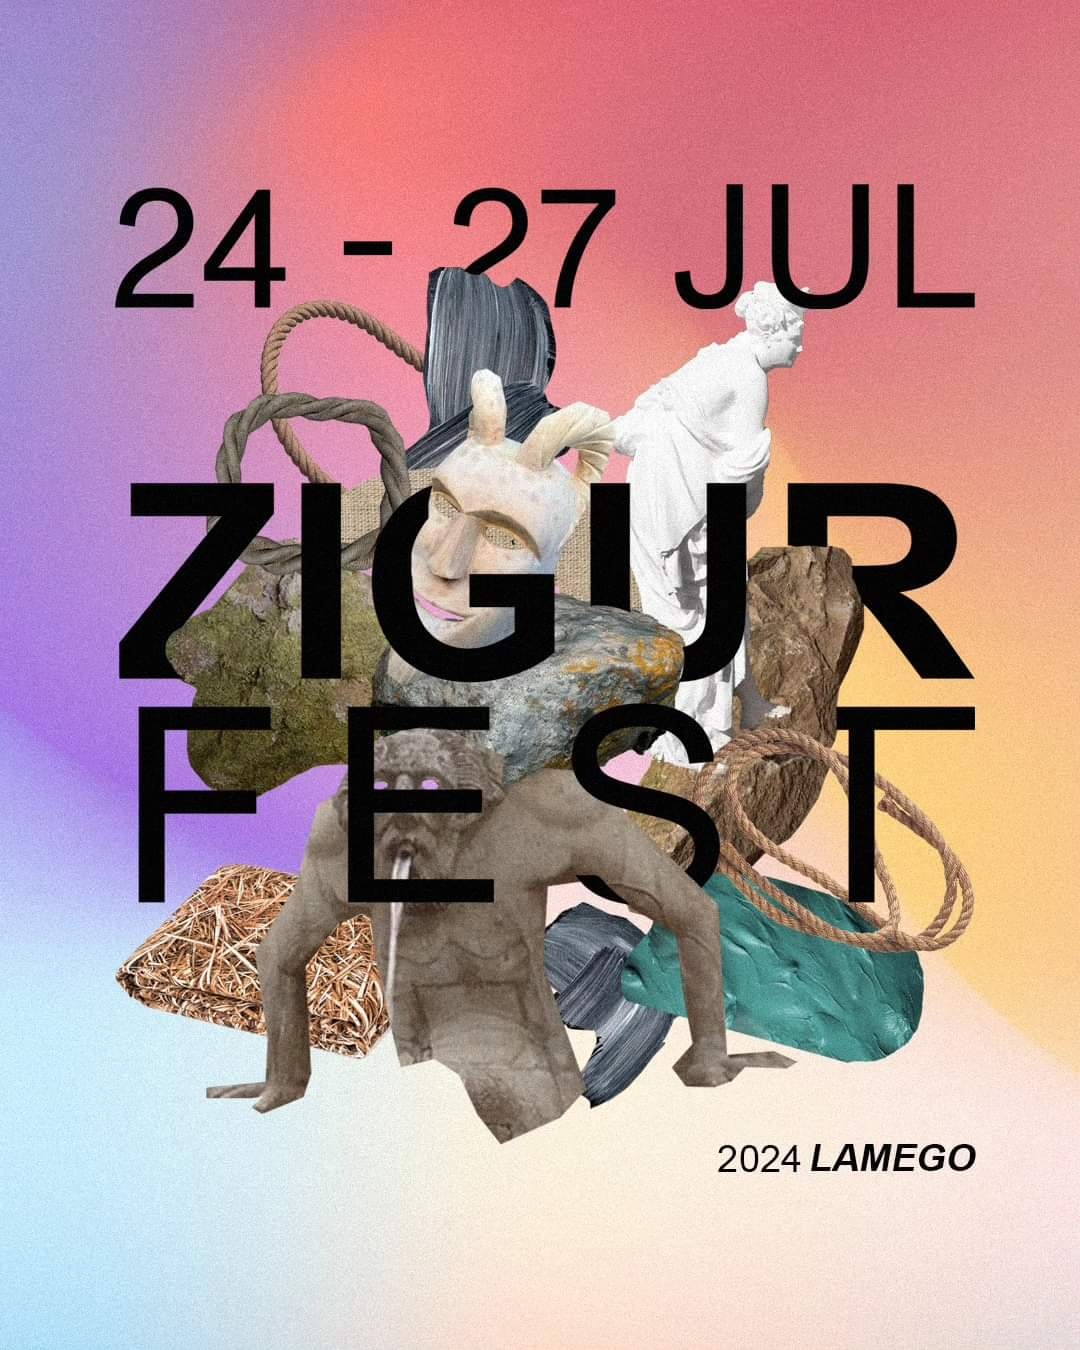 24-27 Julho ZigurFest  2024 Lamego